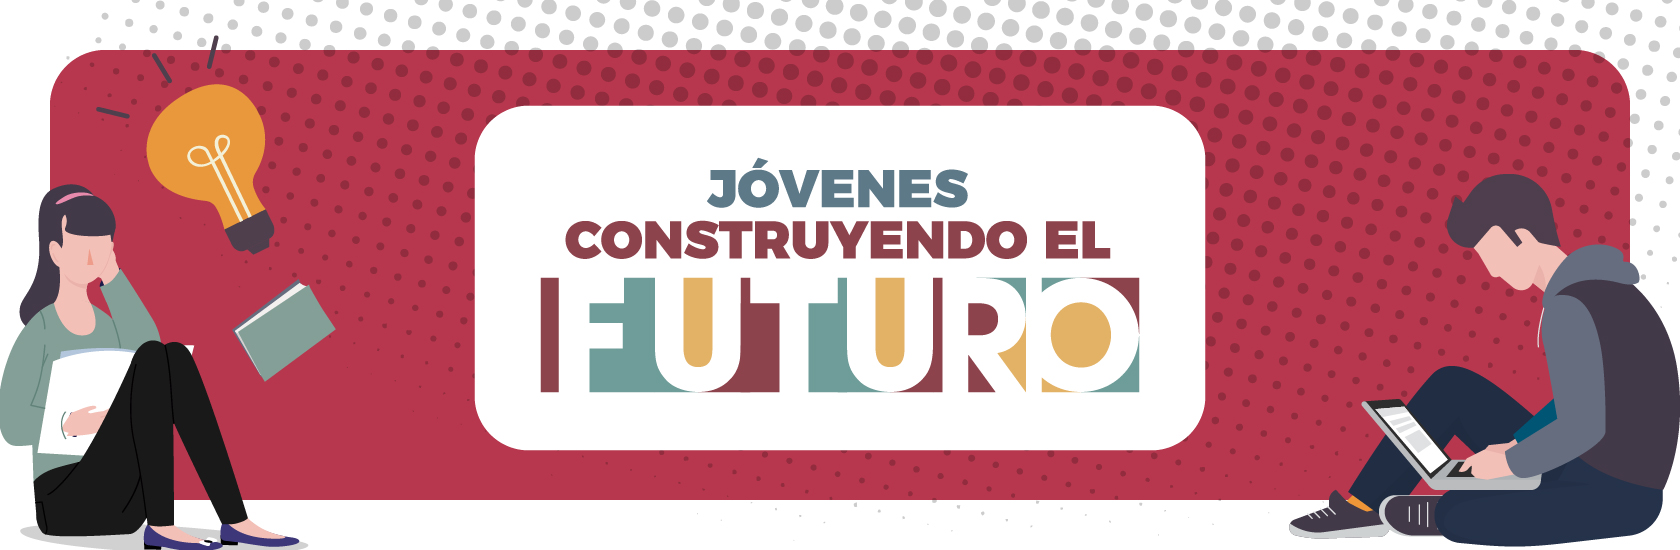 JÓVENES CONSTRUYENDO EL FUTURO | Campaña | gob.mx